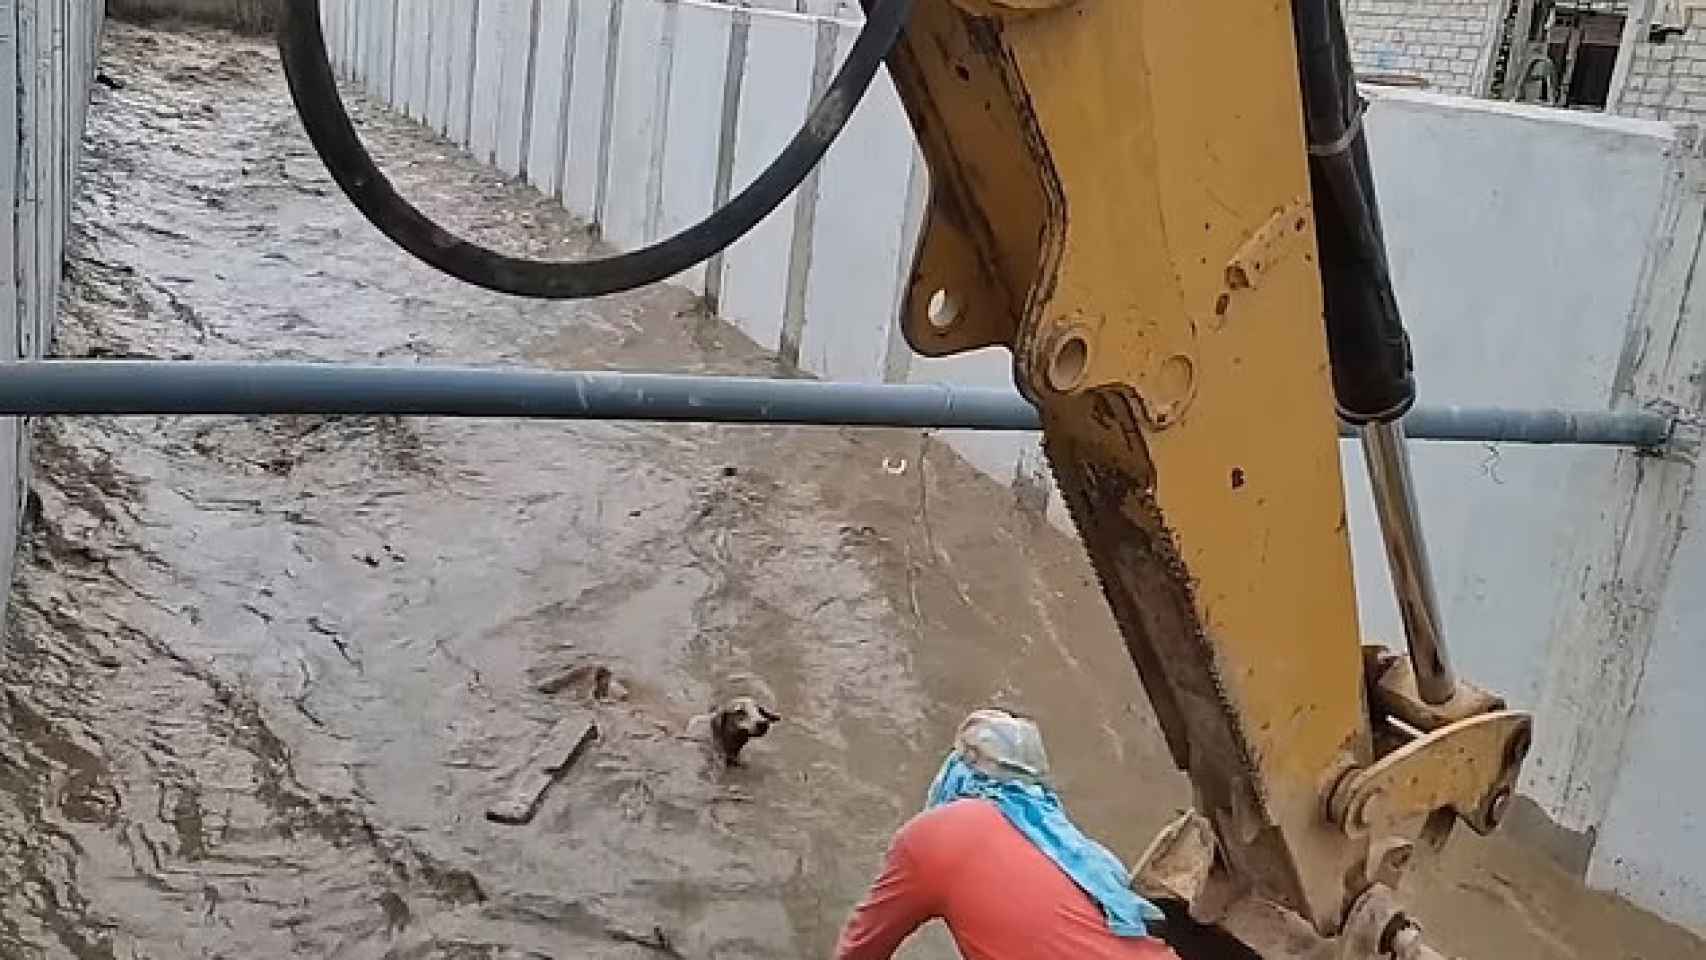 El conmovedor rescate con una excavadora a un perro que estaba a punto de morir ahogado